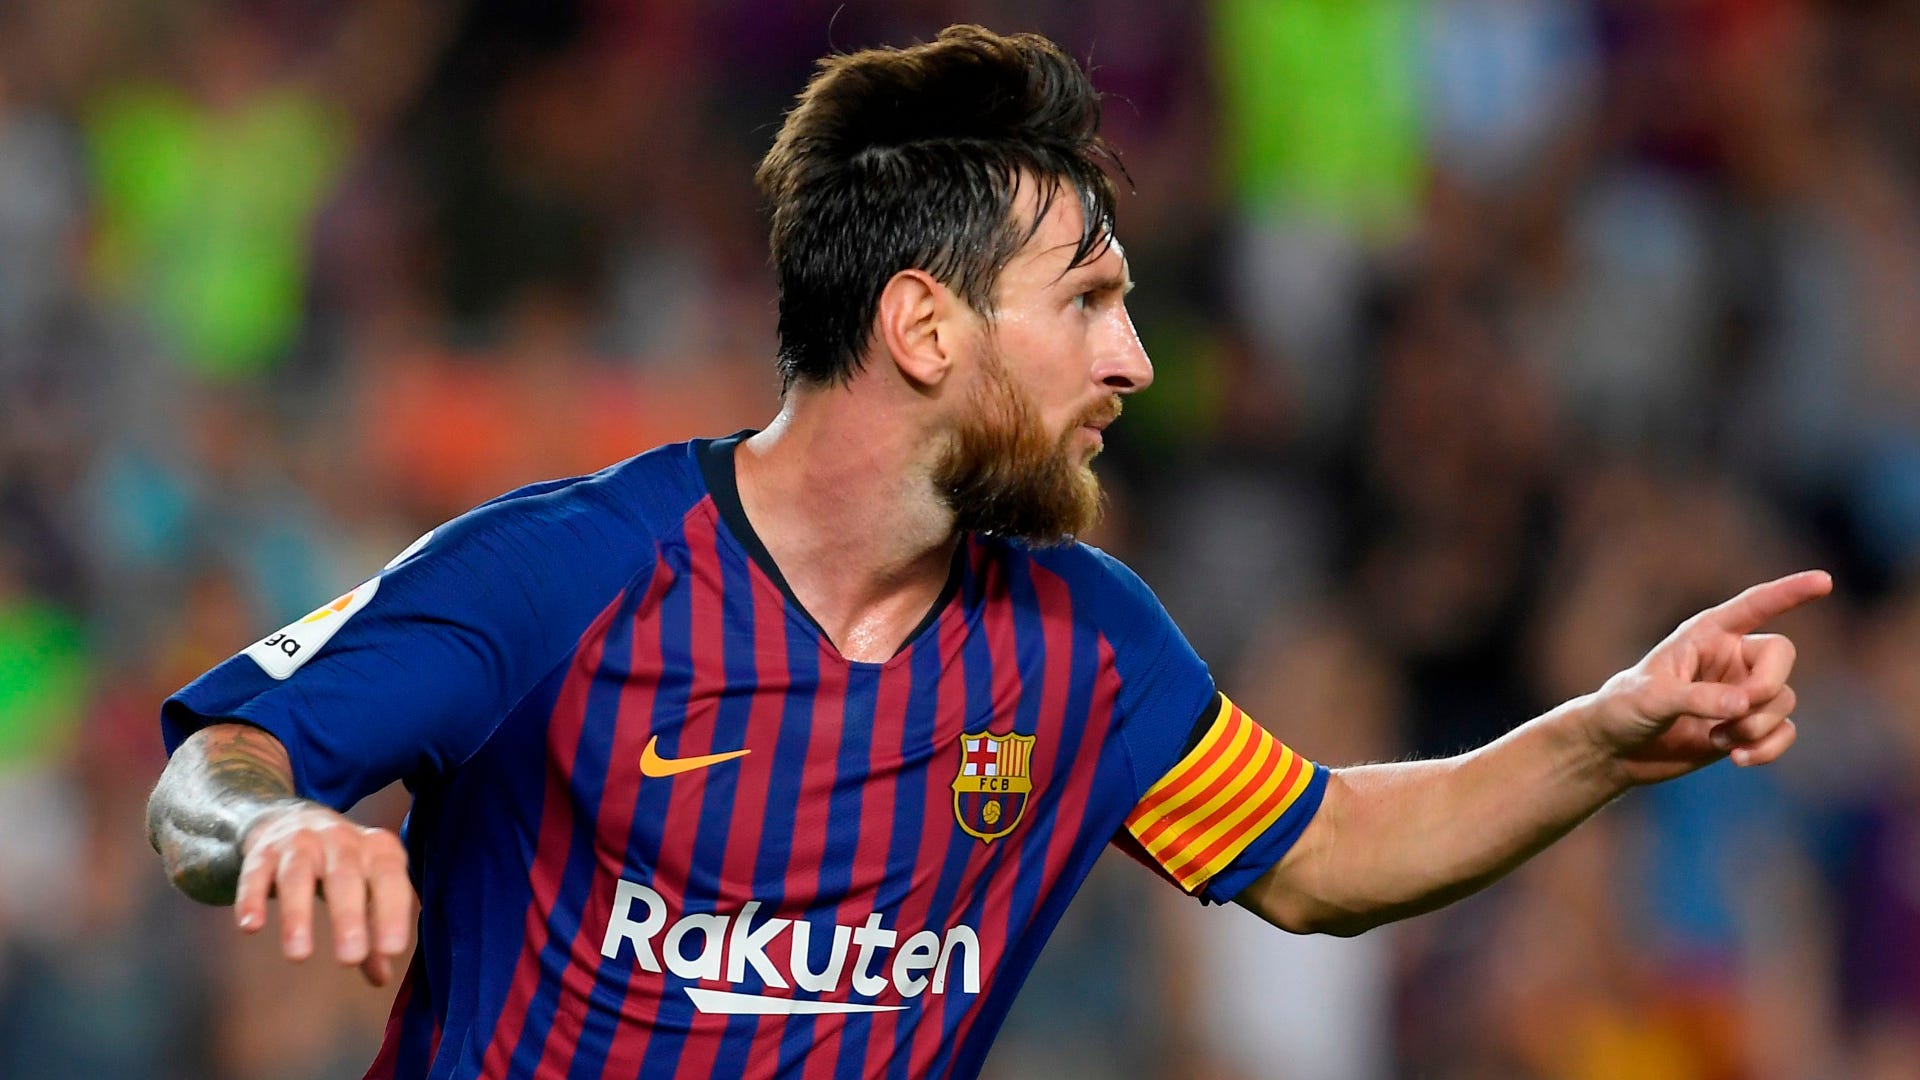 Hãy chiêm ngưỡng những tài sản mà siêu sao bóng đá Lionel Messi đang sở hữu qua những hình ảnh nhiều màu sắc và sinh động. Chắc chắn bạn sẽ ngạc nhiên và cảm thấy kinh ngạc trước số tiền mà anh ấy đã kiếm được từ sự nghiệp bóng đá của mình.